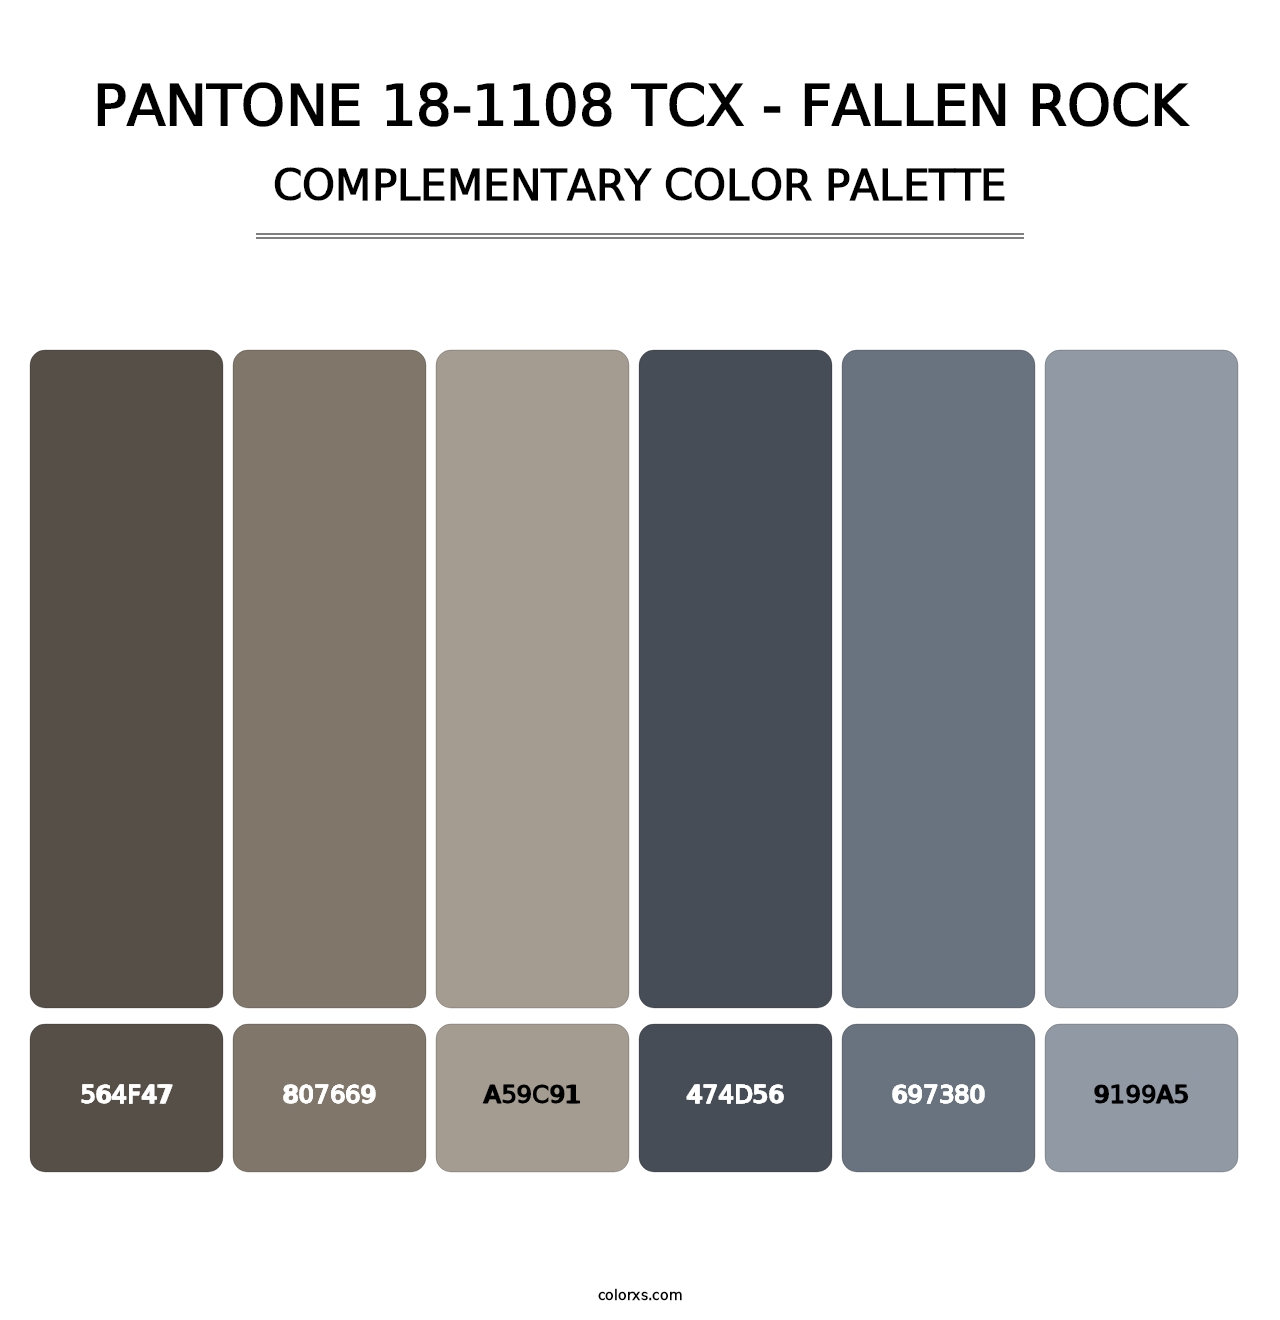 PANTONE 18-1108 TCX - Fallen Rock - Complementary Color Palette